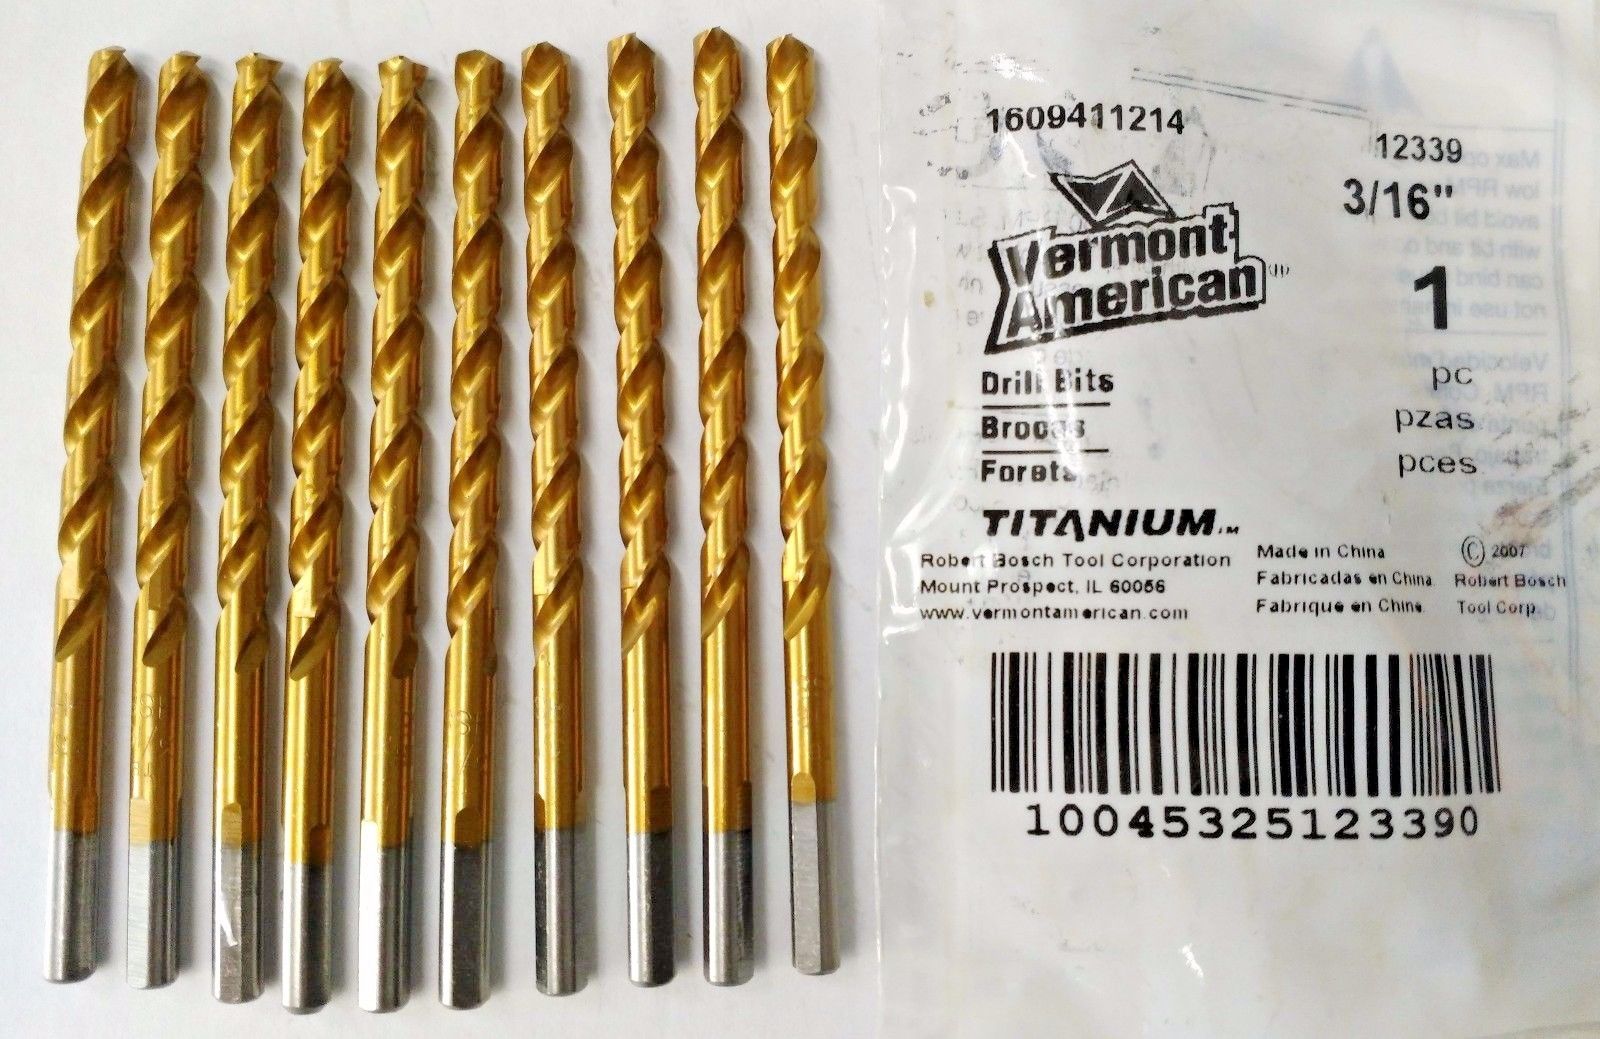 Vermont American 12339 3/16" Titanium Coated Drill Bit 10 Pack